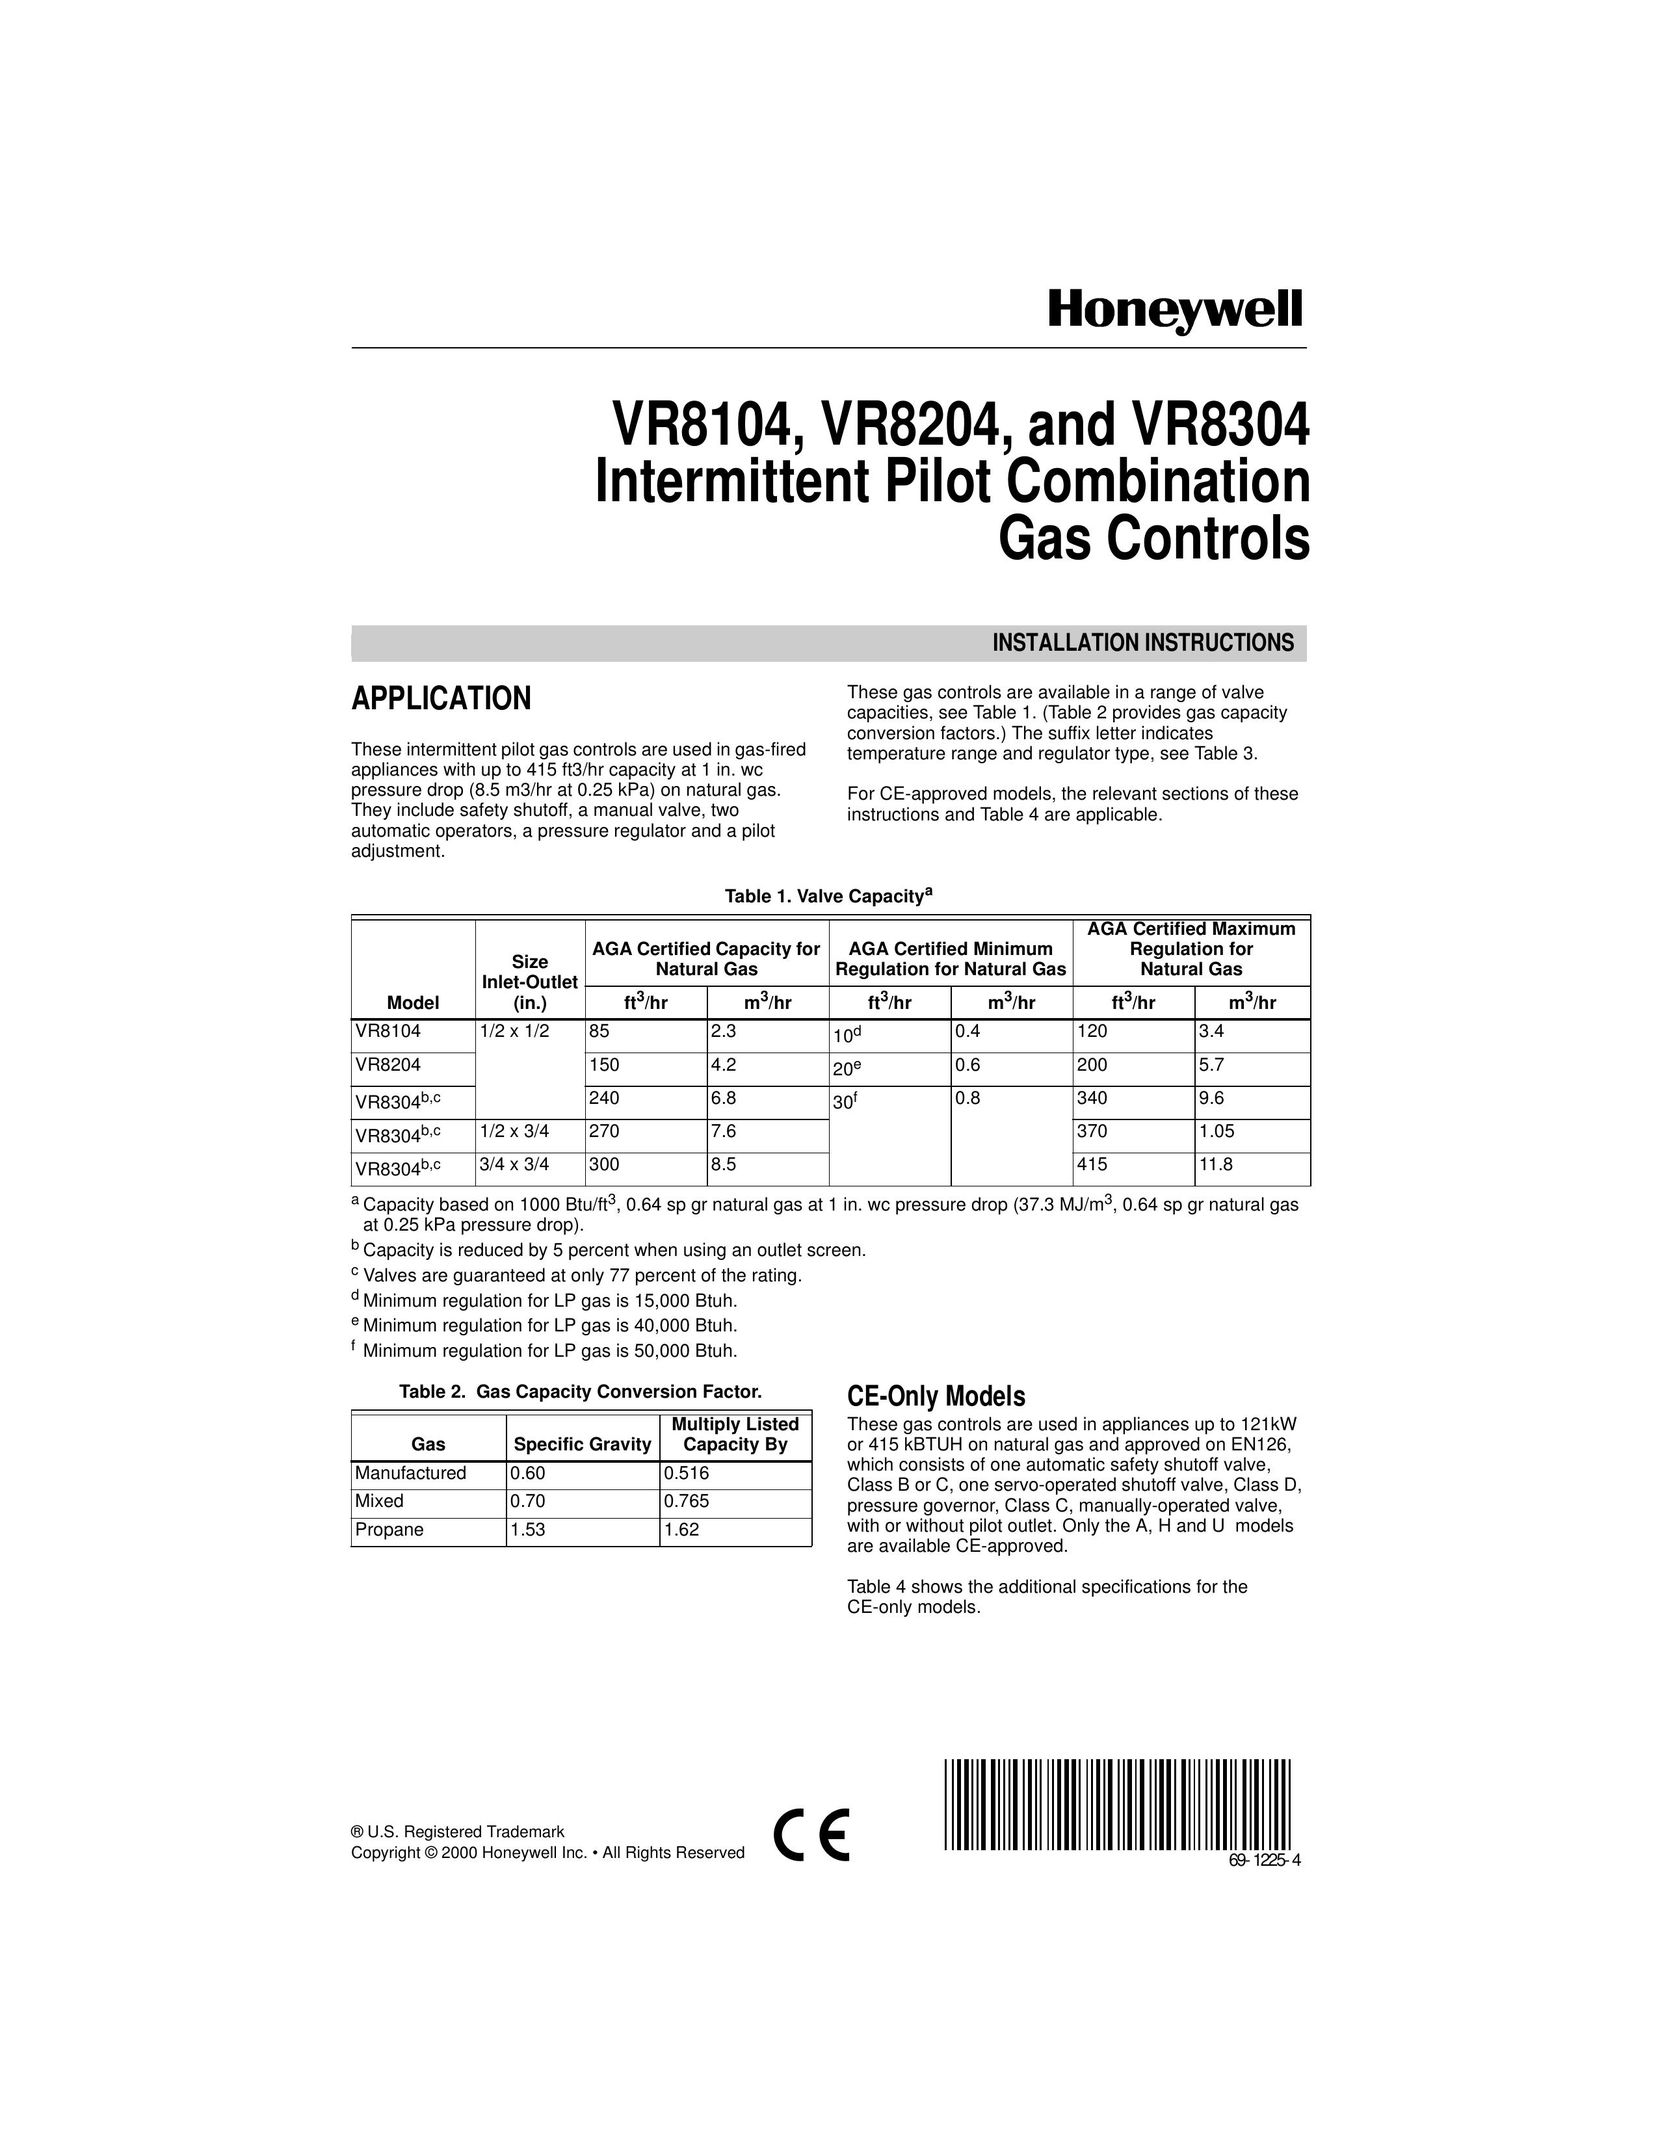 Honeywell VR8204 Boiler User Manual